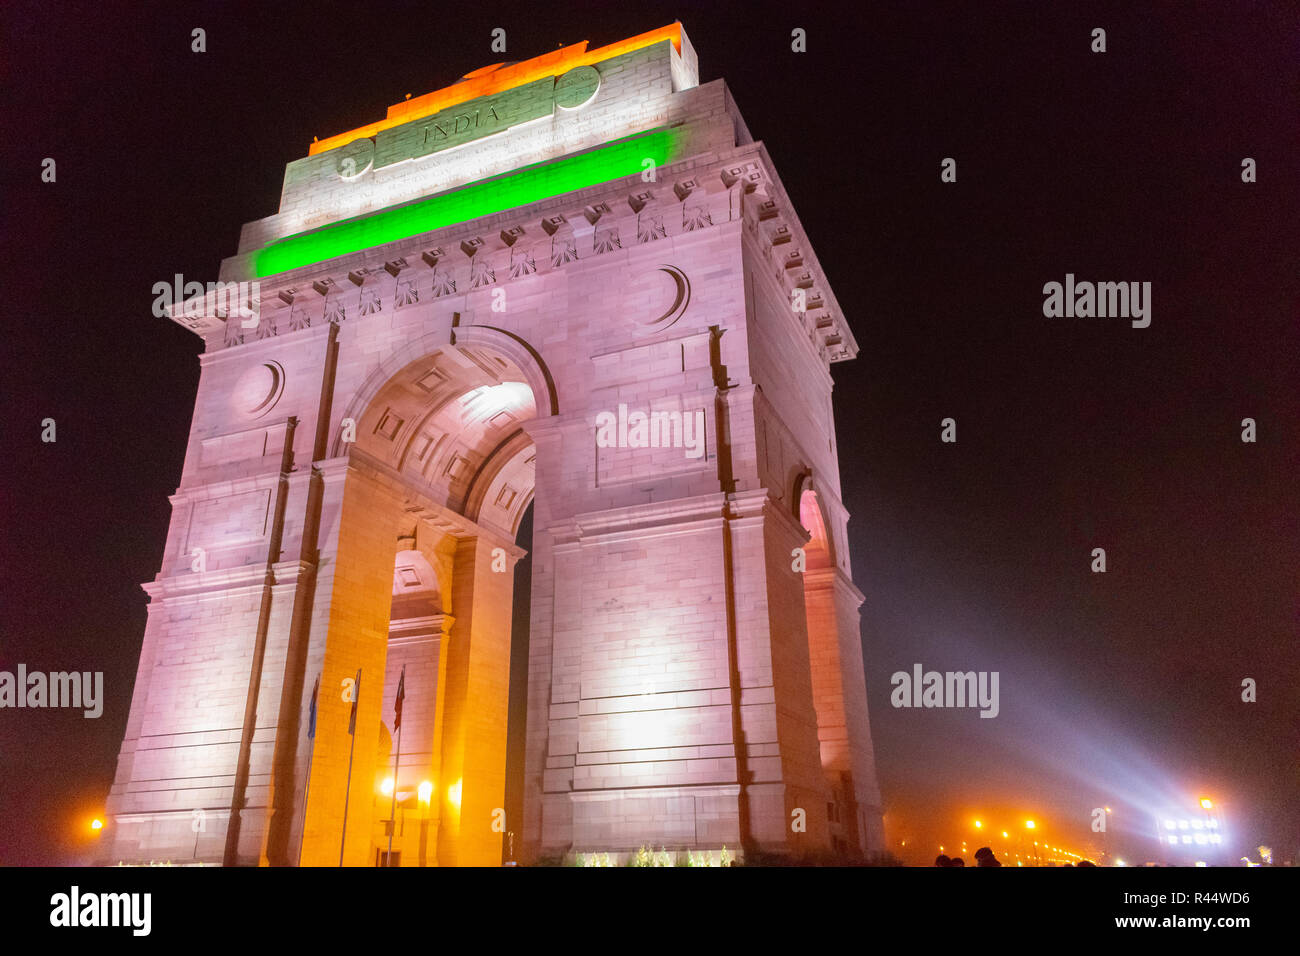 India Gate di notte- tri-illuminazione colorata Foto Stock